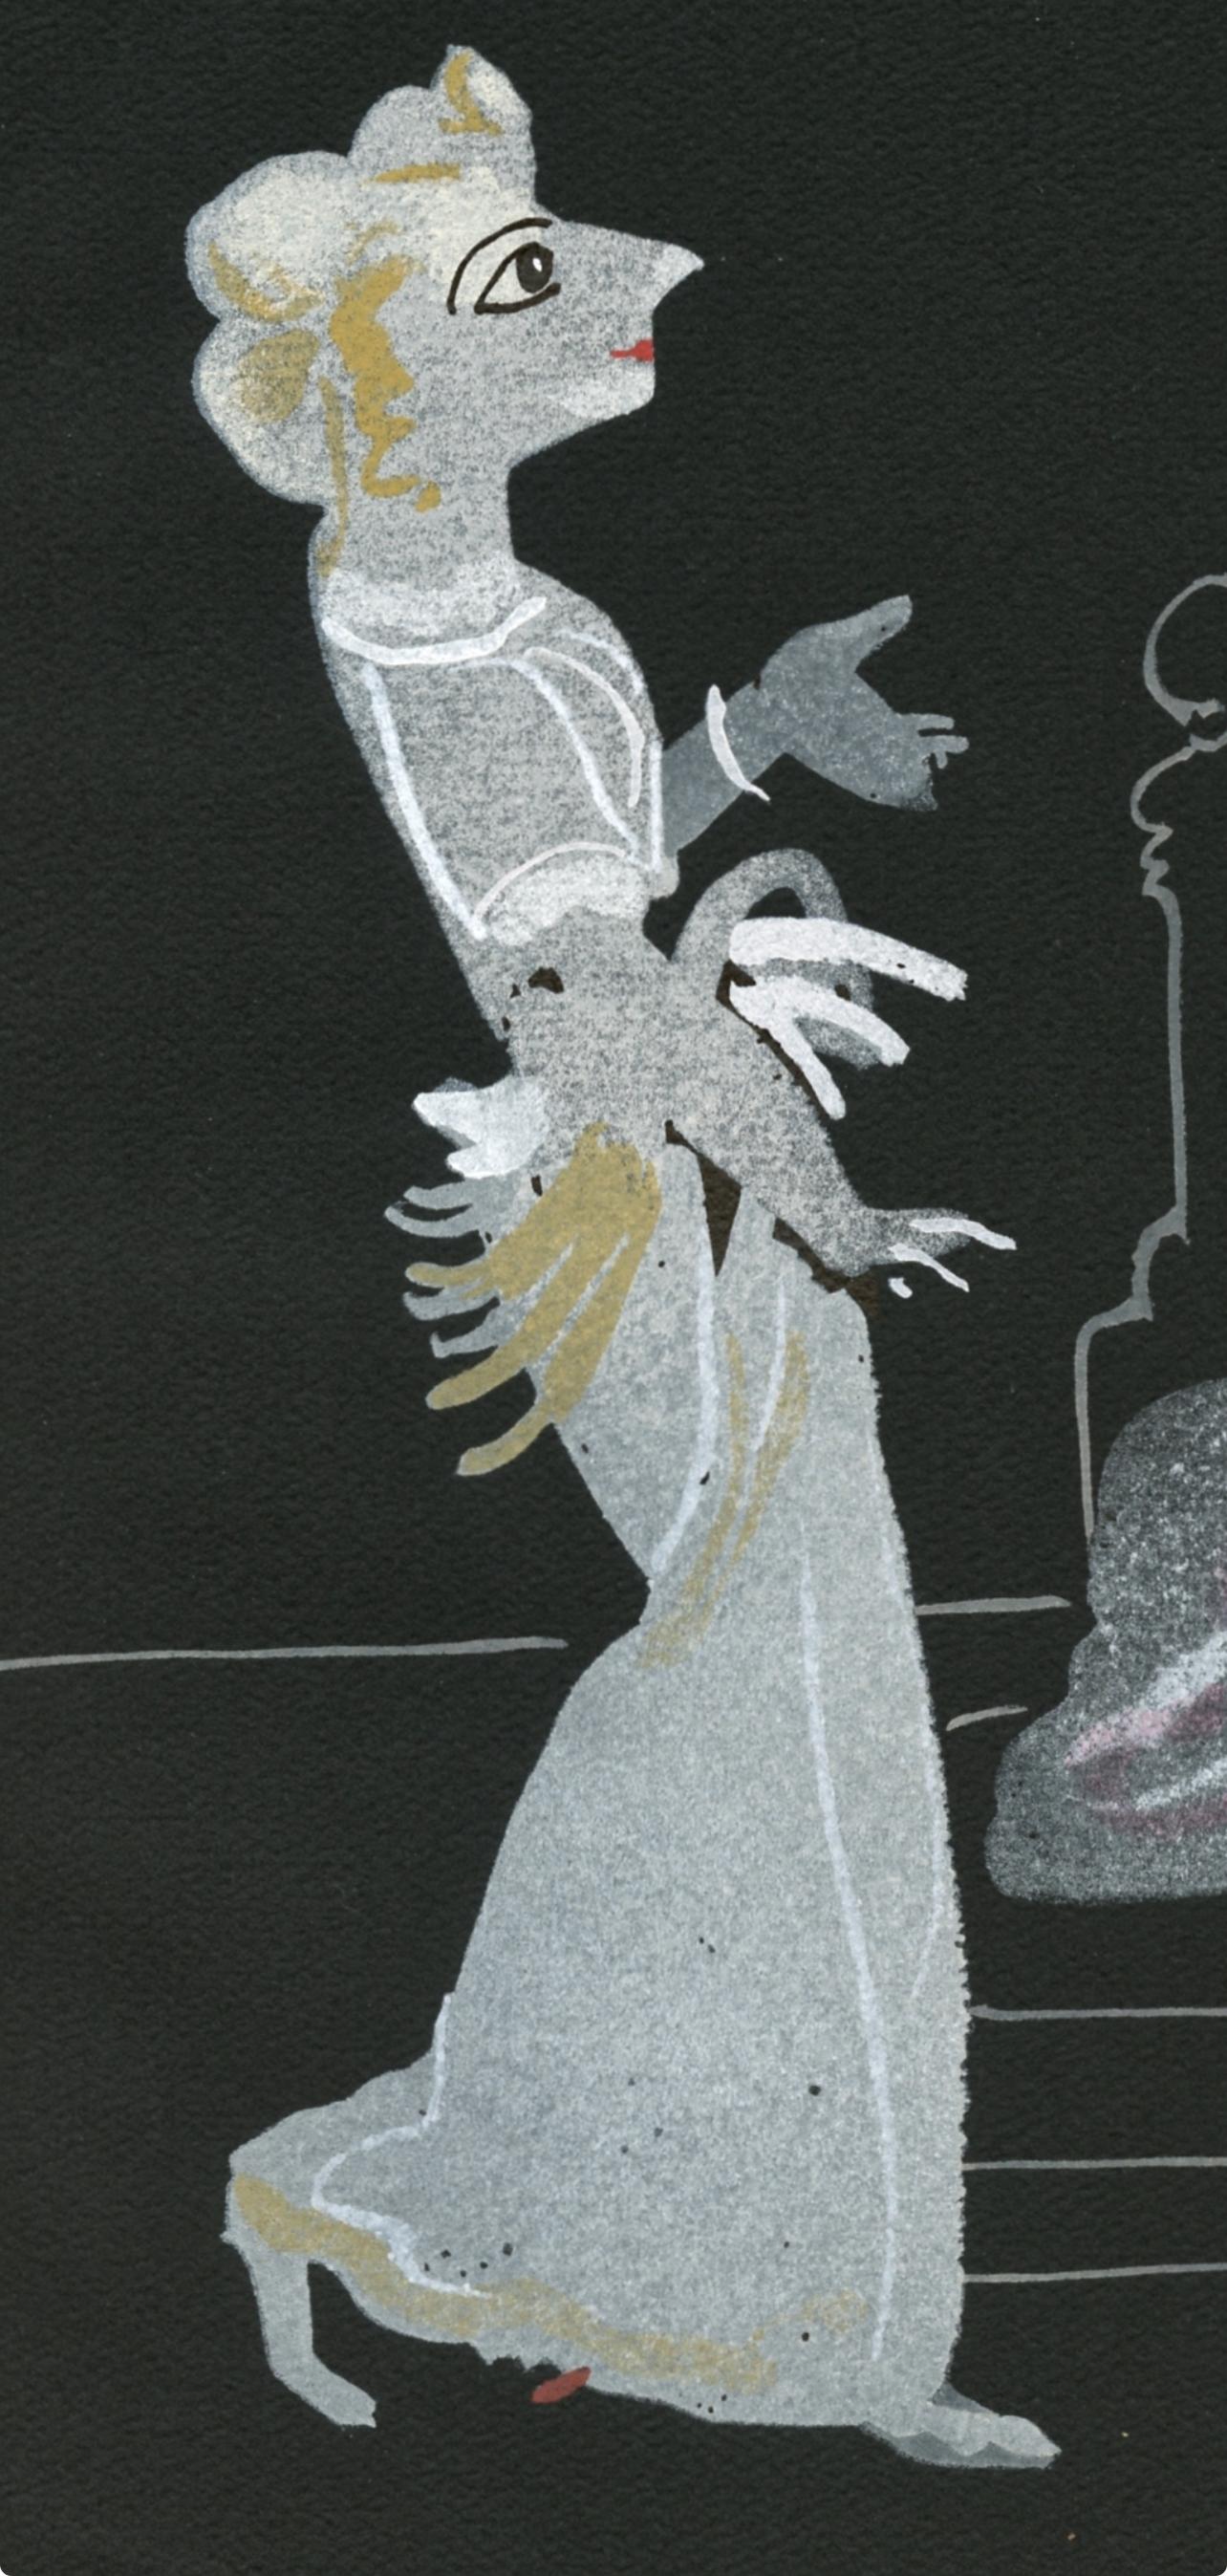 Derain, Composition, Salomé, The Limited Editions Club (d'après) - Print de André Derain